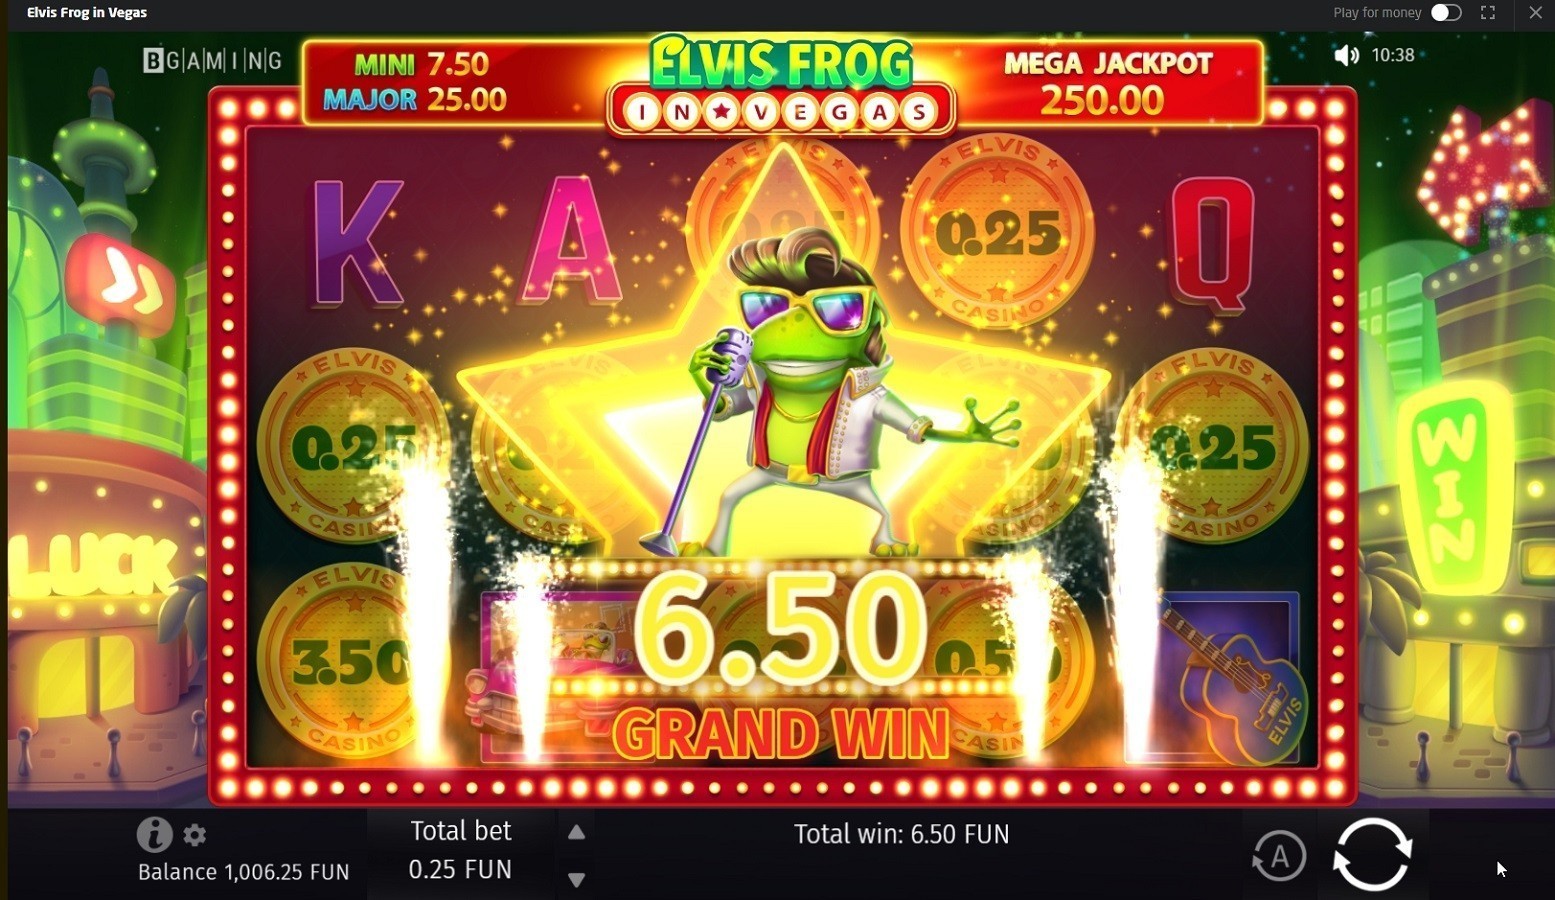 Stay_casino_hot_top_casino_Elvis_frog_win